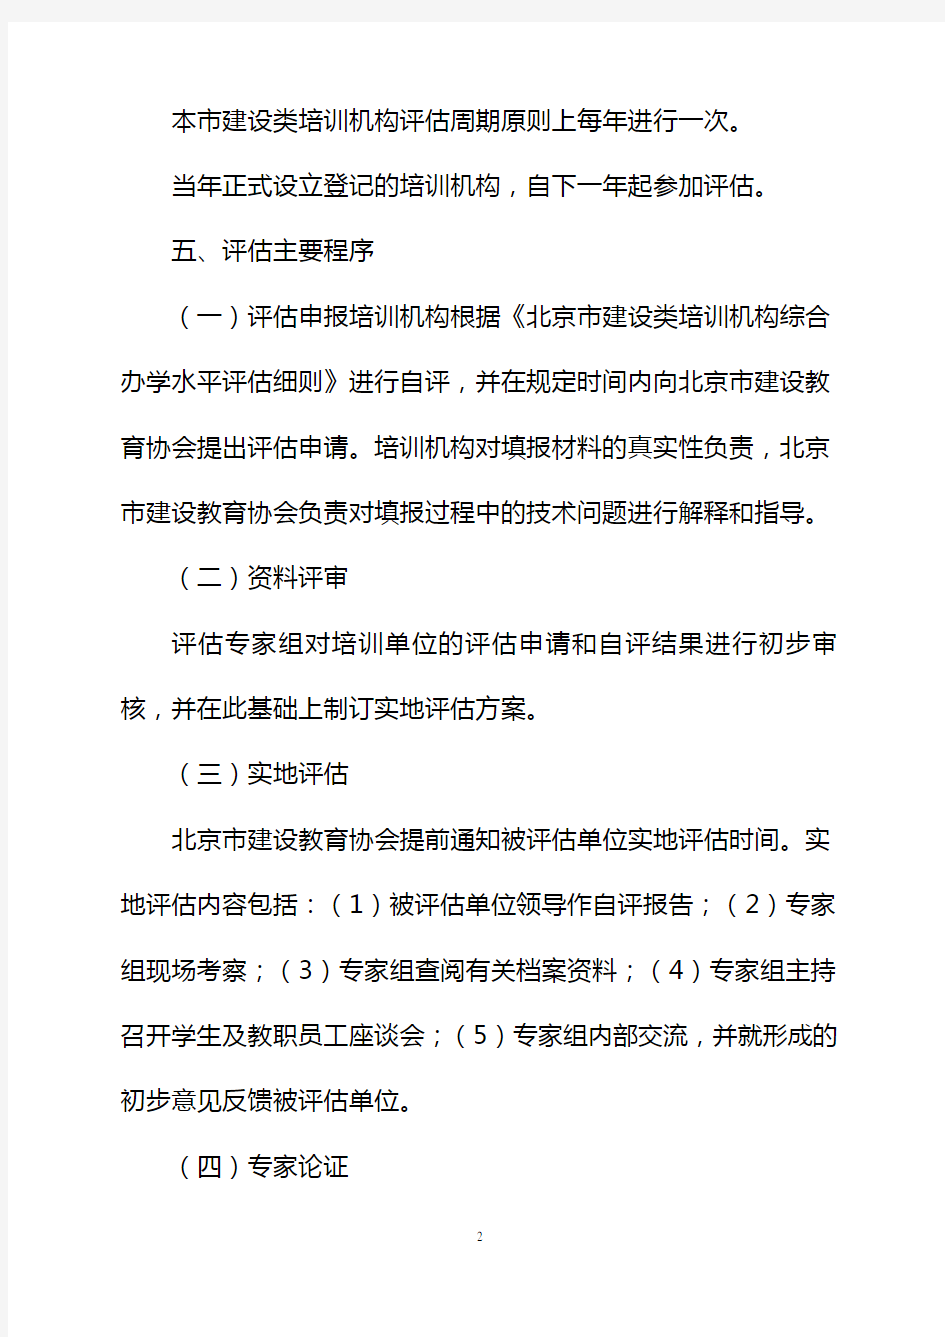 北京市建设类培训机构综合办学水平评估方案